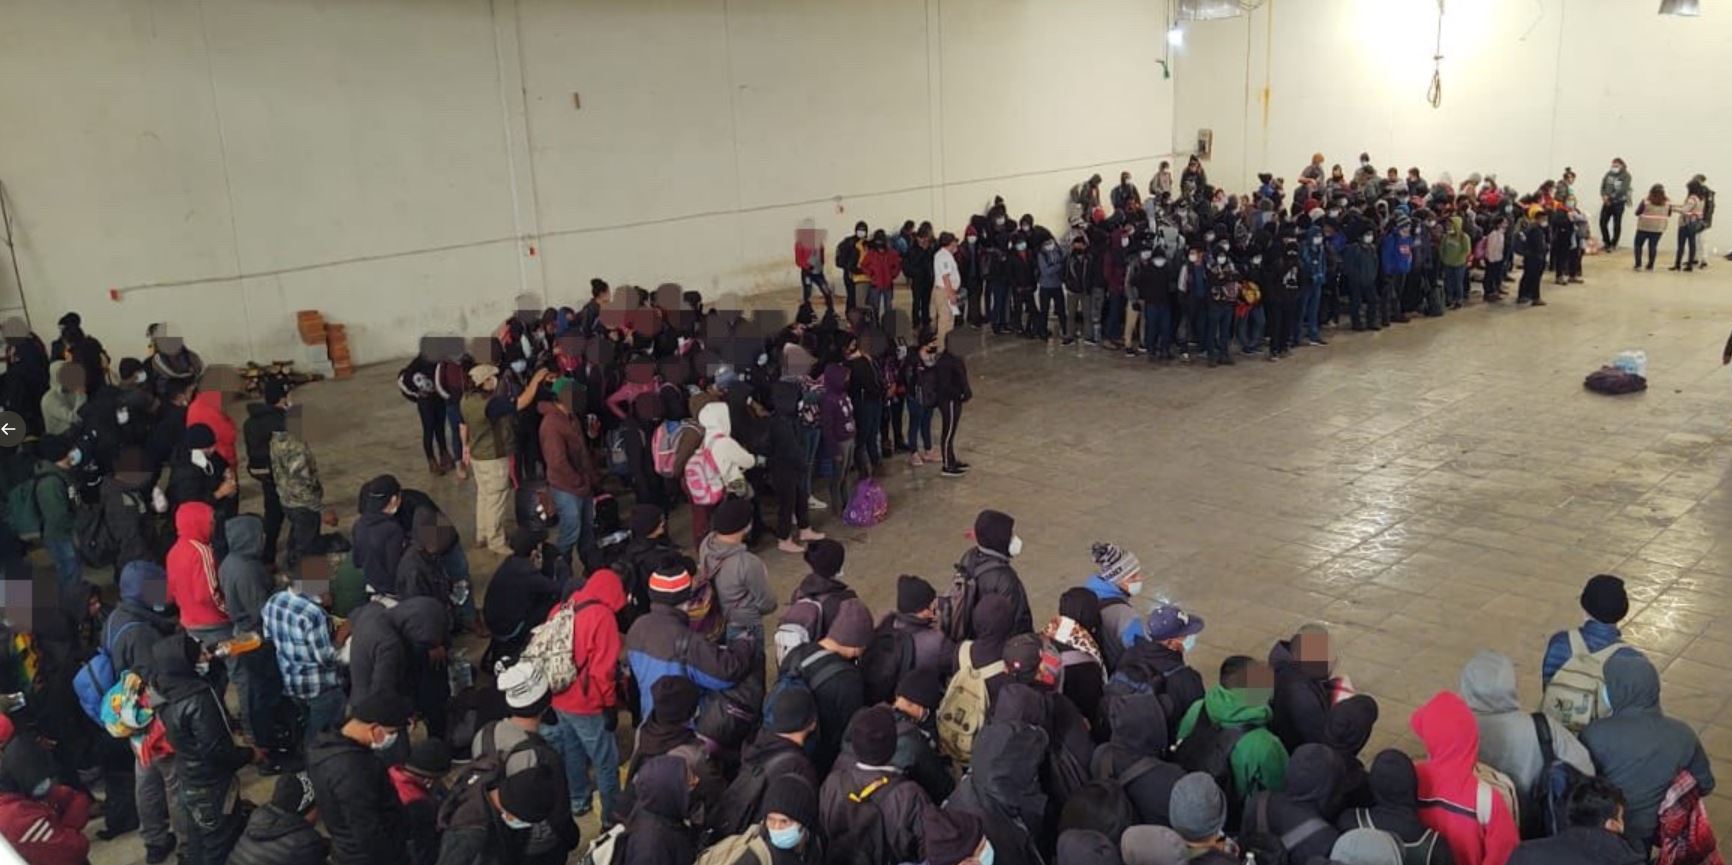 Los 432 migrantes ubicados en furgones refrigerados que transportaban dos tráileres en Tlaxcala, México. La mayoría de migrantes eran guatemaltecos. (Foto Prensa Libre: INM)